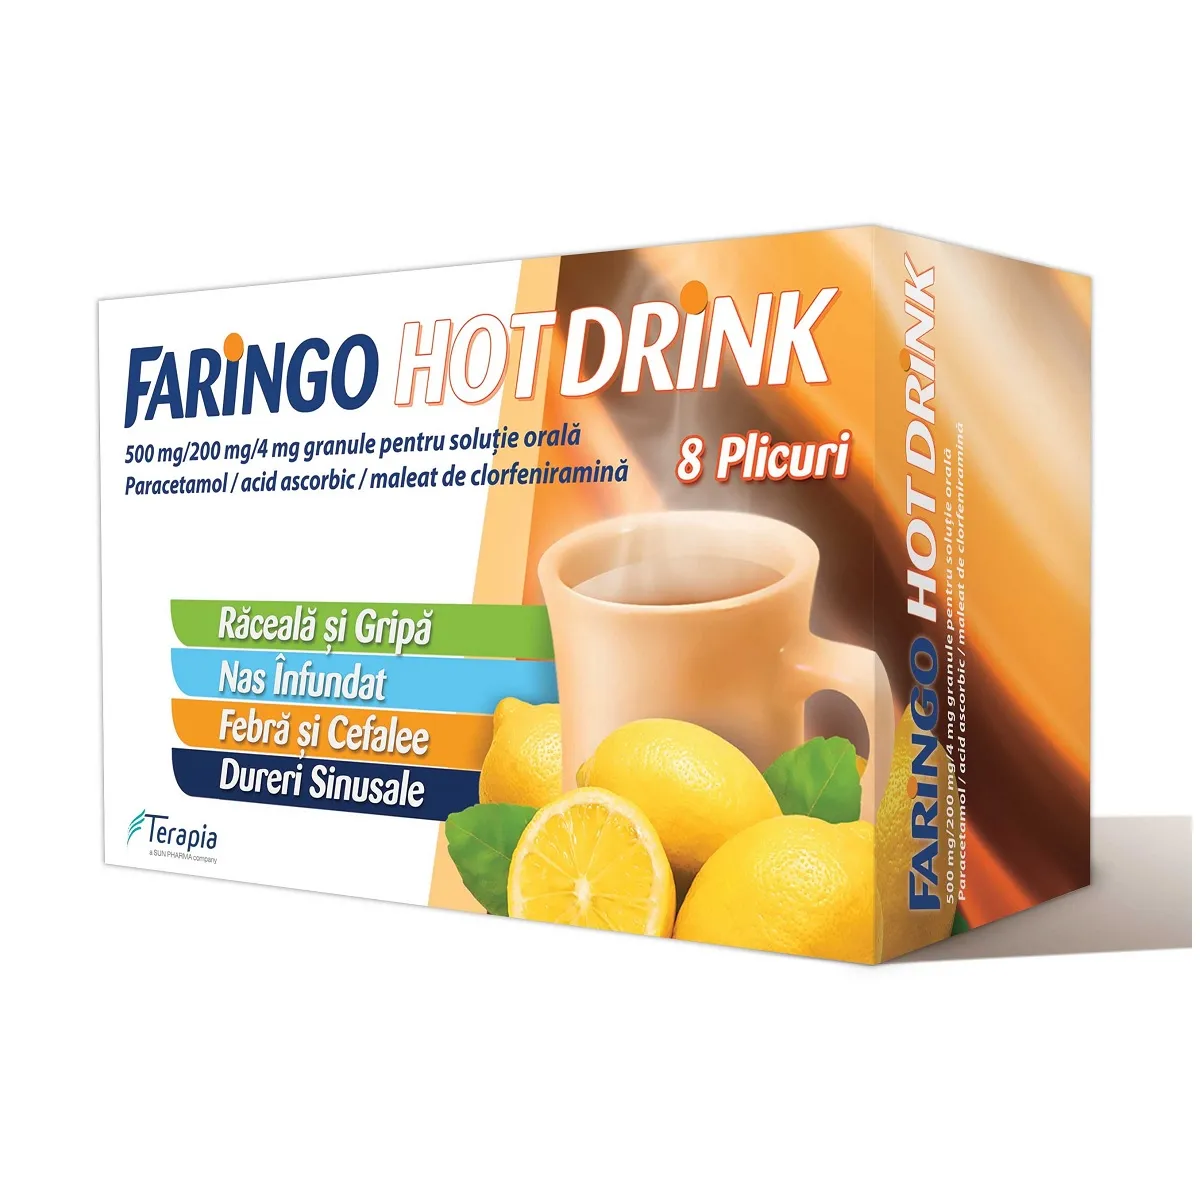 Faringo Hot Drink, 8 plicuri